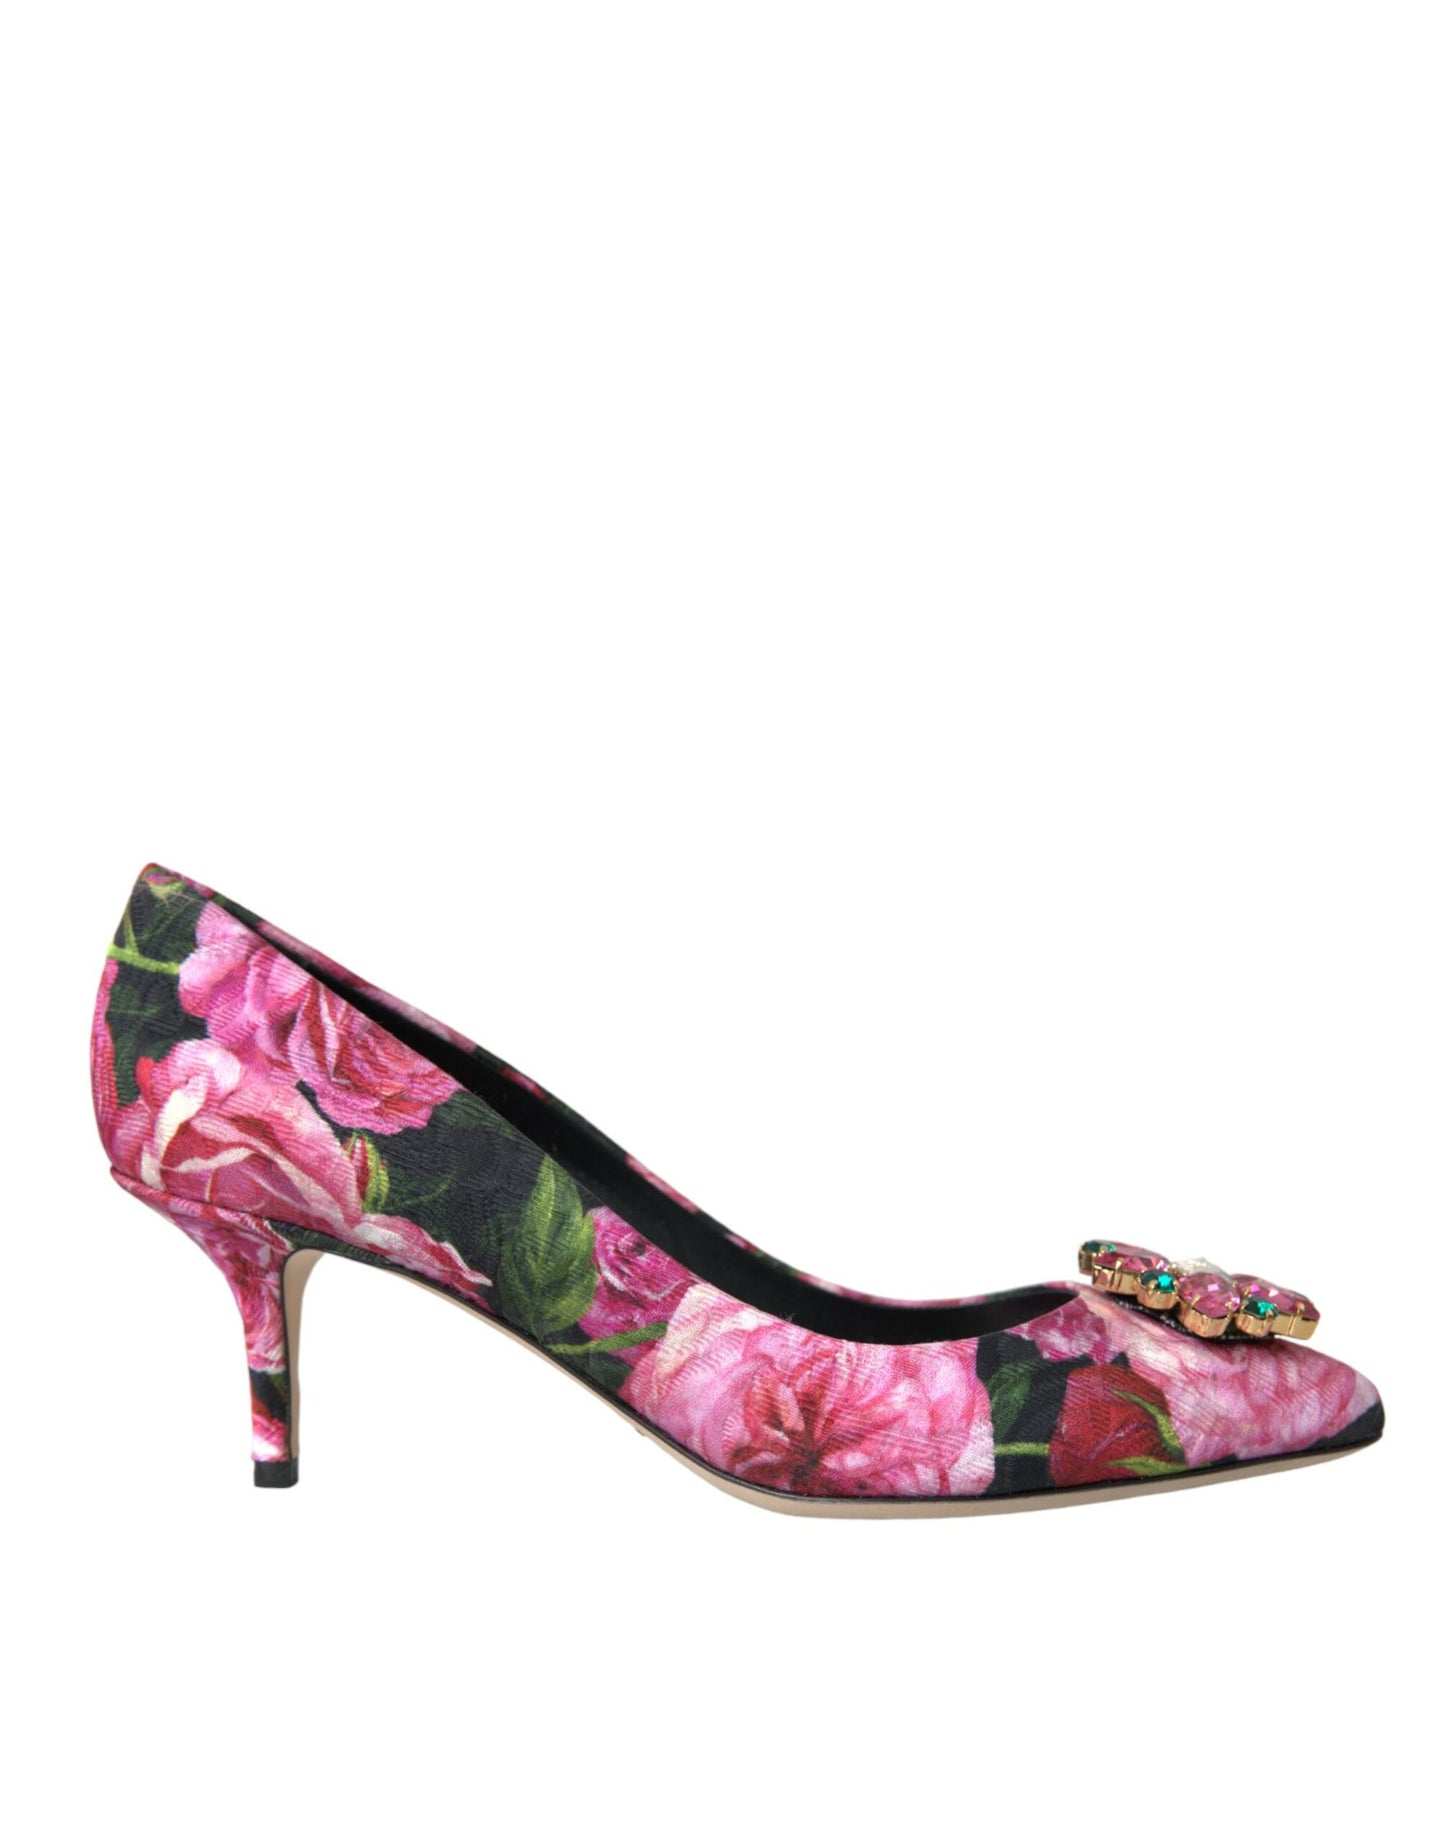 Dolce & Gabbana Multicolor Floral Brocade Crystal Heels Pumps Shoes